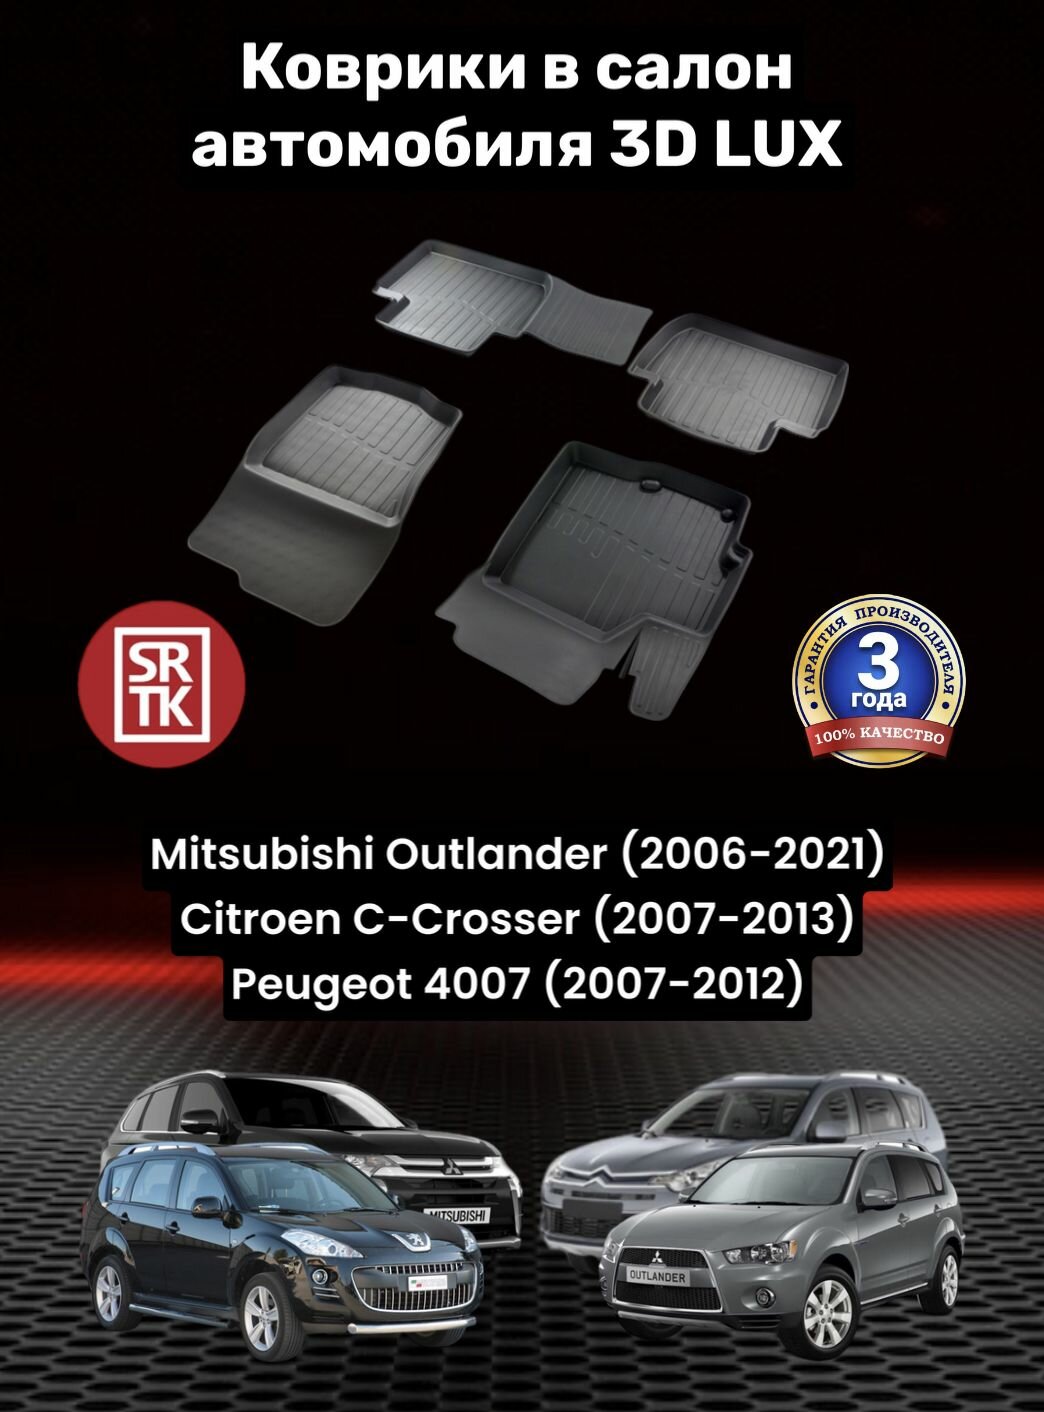 Ковры резиновые для Митсубиси Аутлендер/Ситроен Ц Кроссер/Пежо 4007/Mitsubishi Outlander (2006-2021)/Citroen C-Crosser (2007-2013)/Peugeot 4007(2007-2012) 3D LUX SRTK (Саранск) комплект в салон